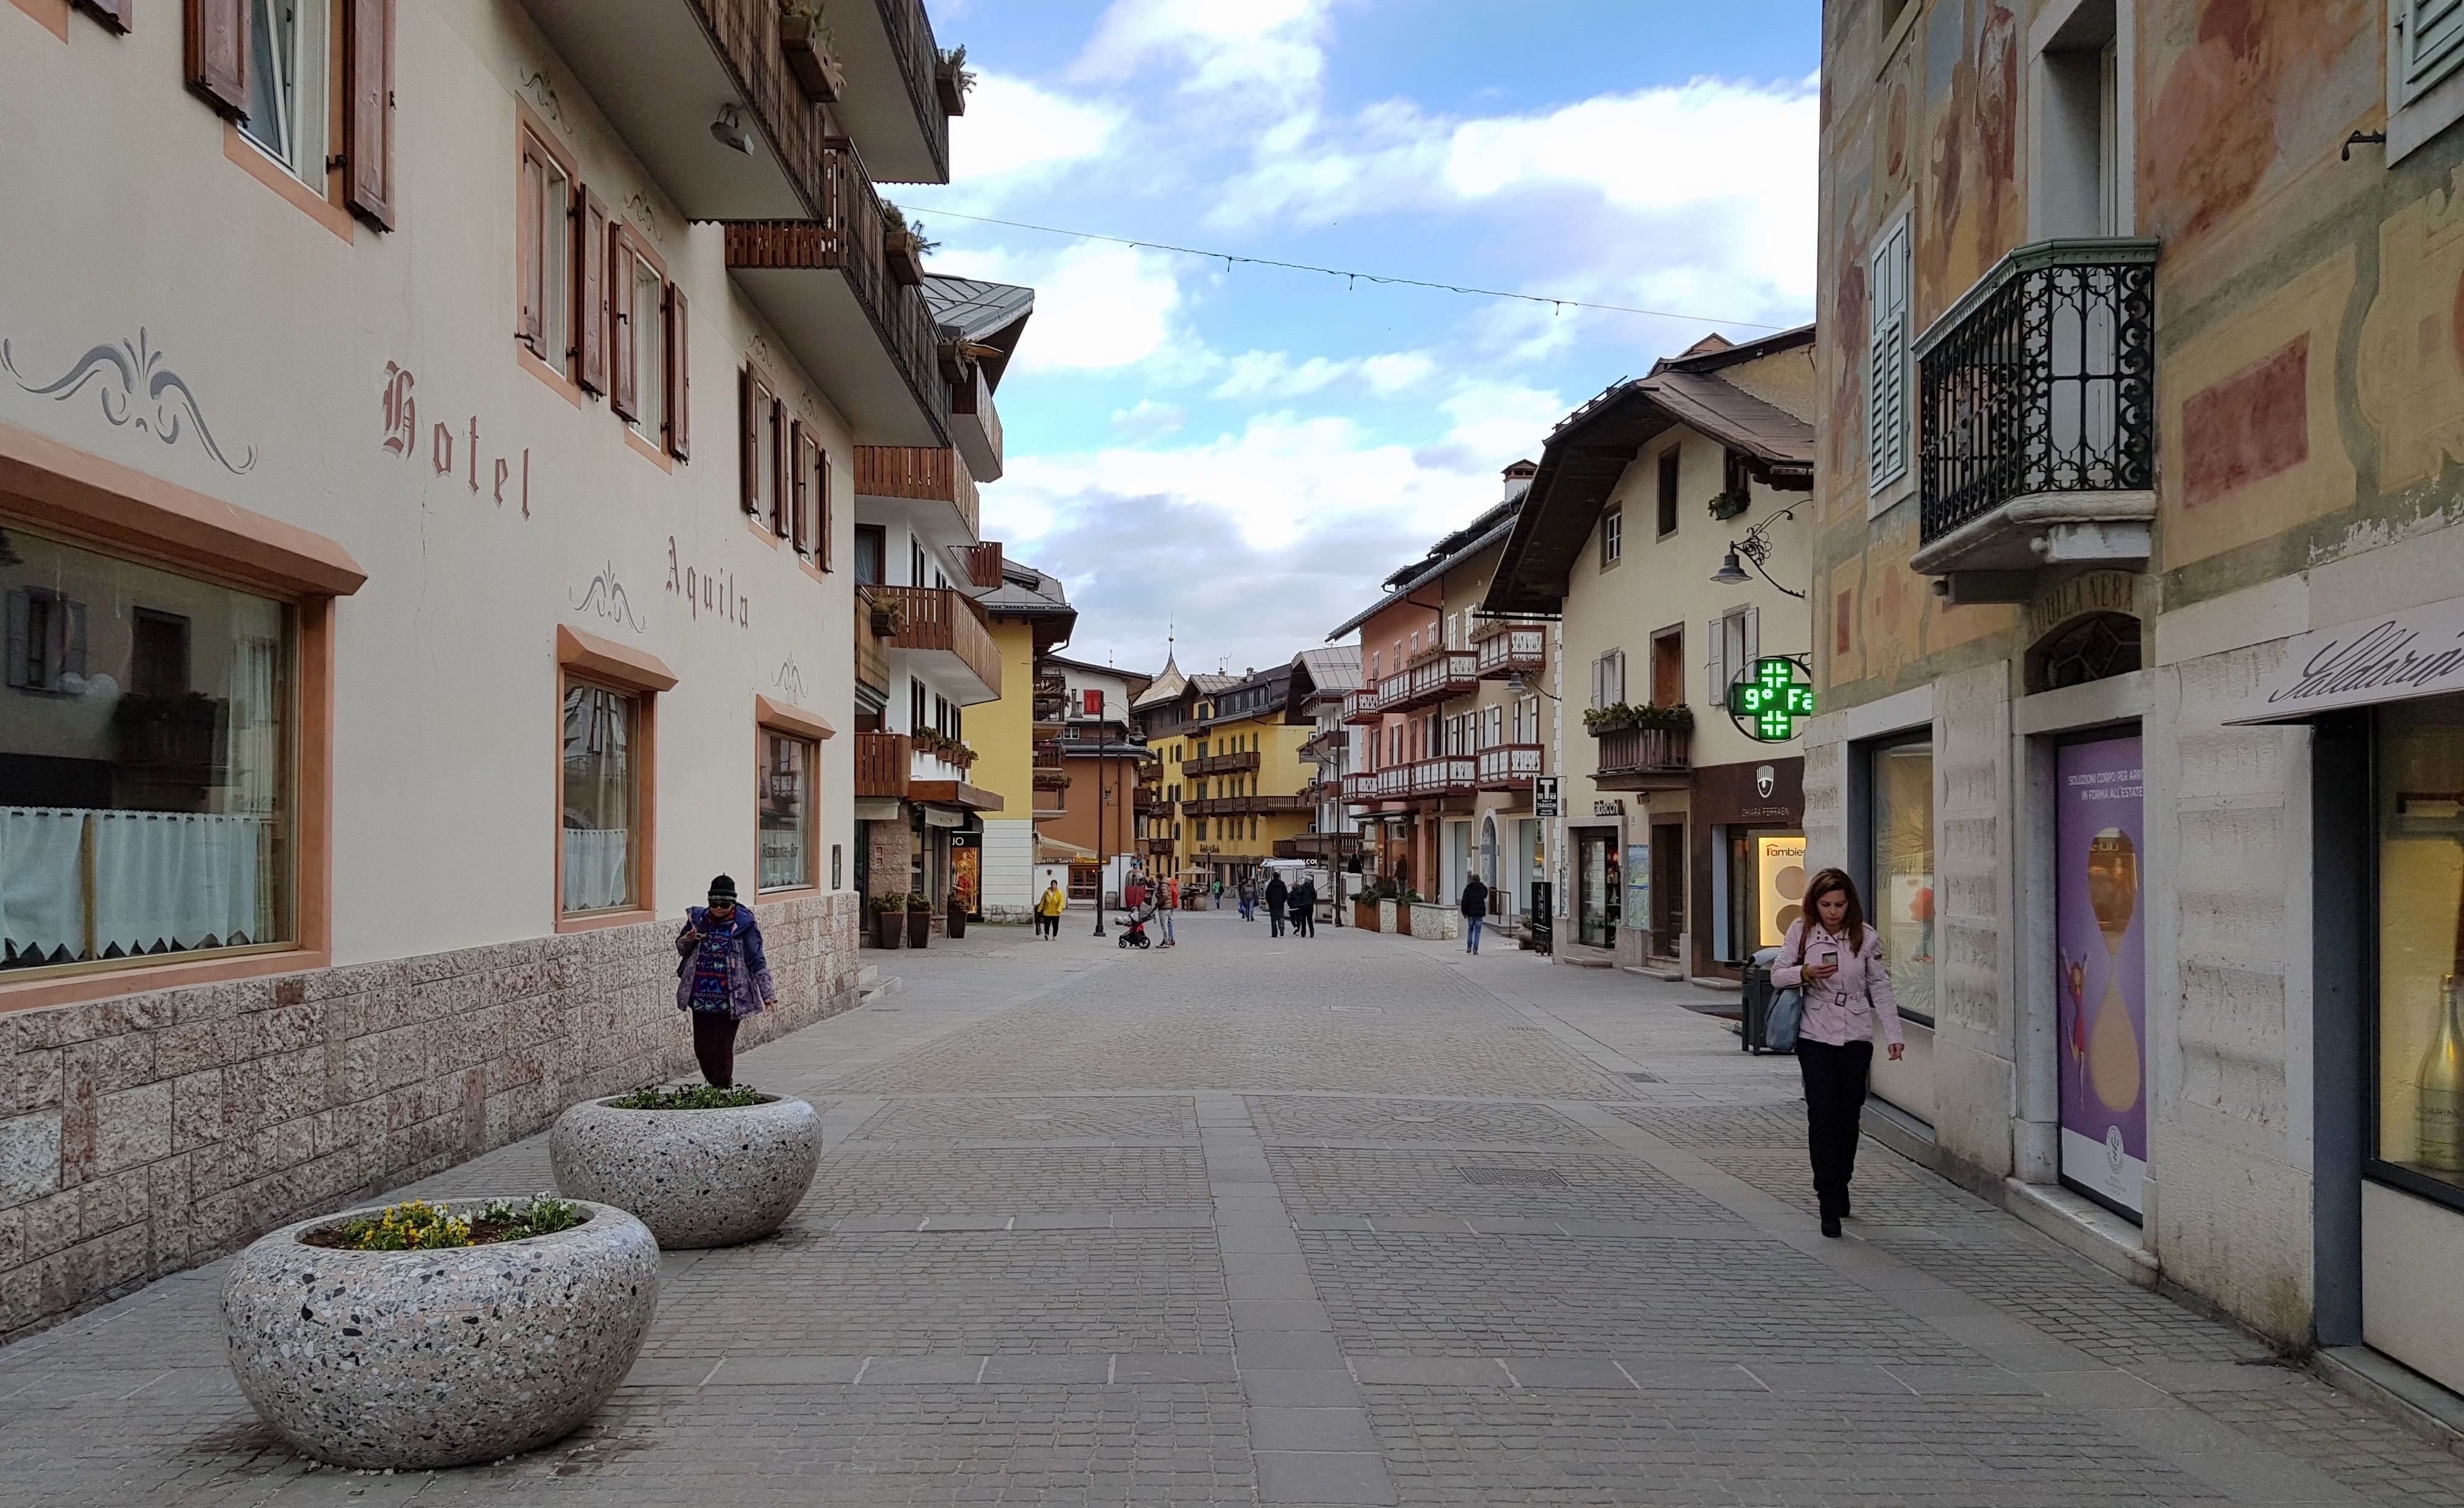 Corso Italia, de hoofdstraat van Cortina